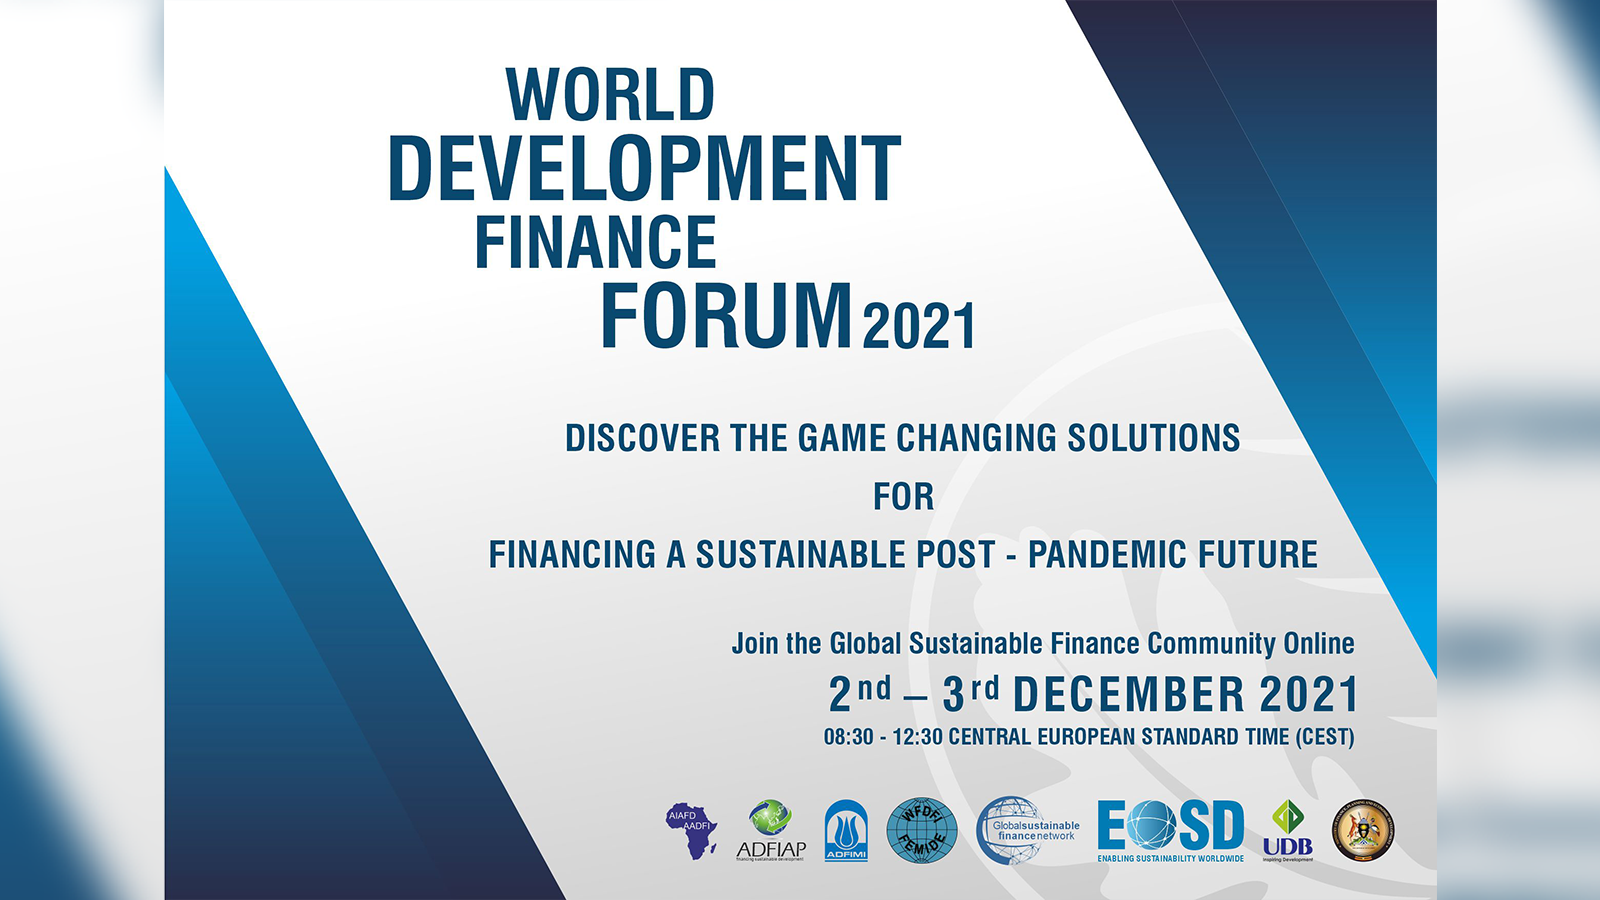 World Development Finance Forum 2021